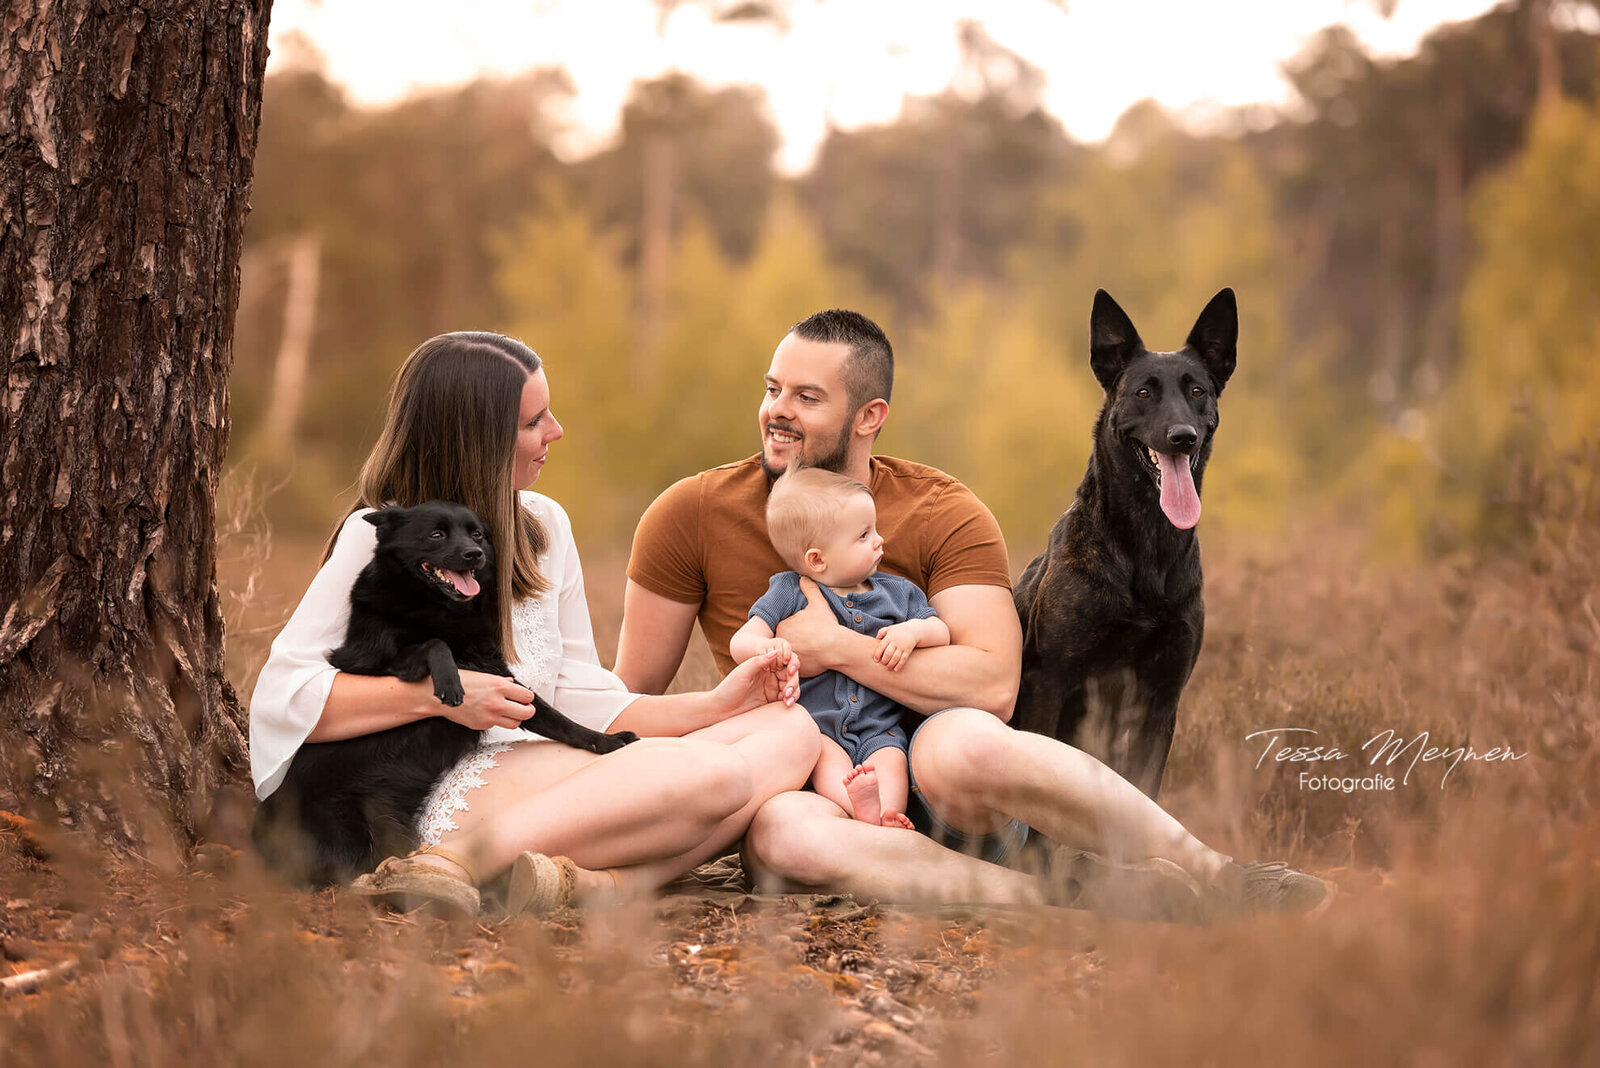 Foto van het hele gezin met baby en 2 honden